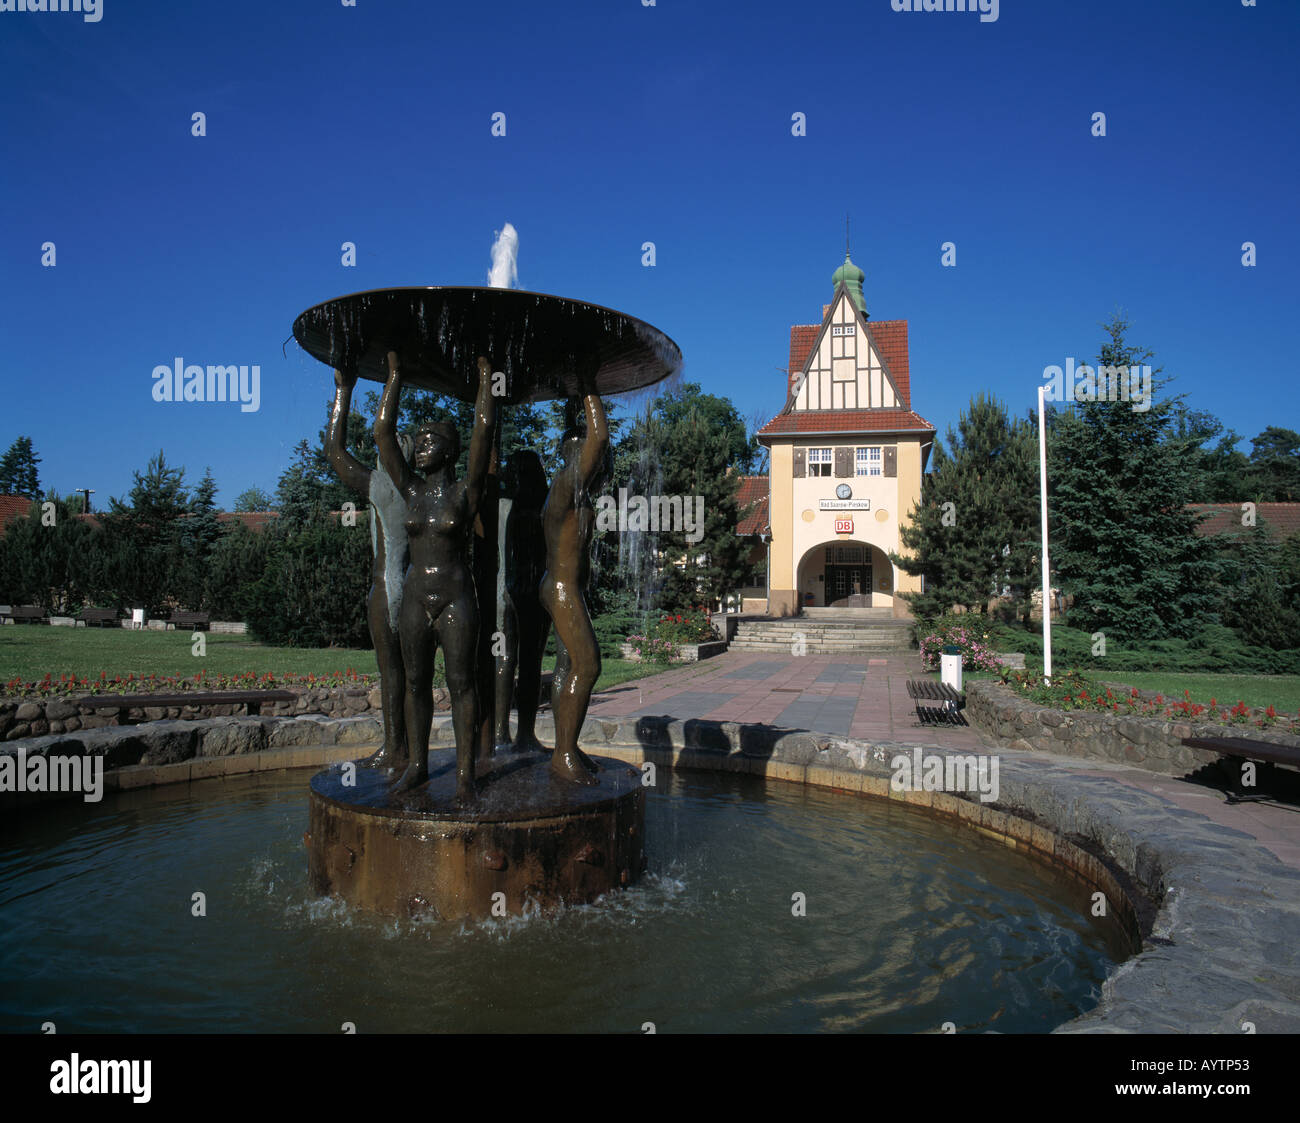 Springbrunnen mit Brunnenfiguren vor dem Bahnhofsgebaeude in Bad Saarow-Pieskow, Scharmuetzelsee, Brandenburg Foto Stock